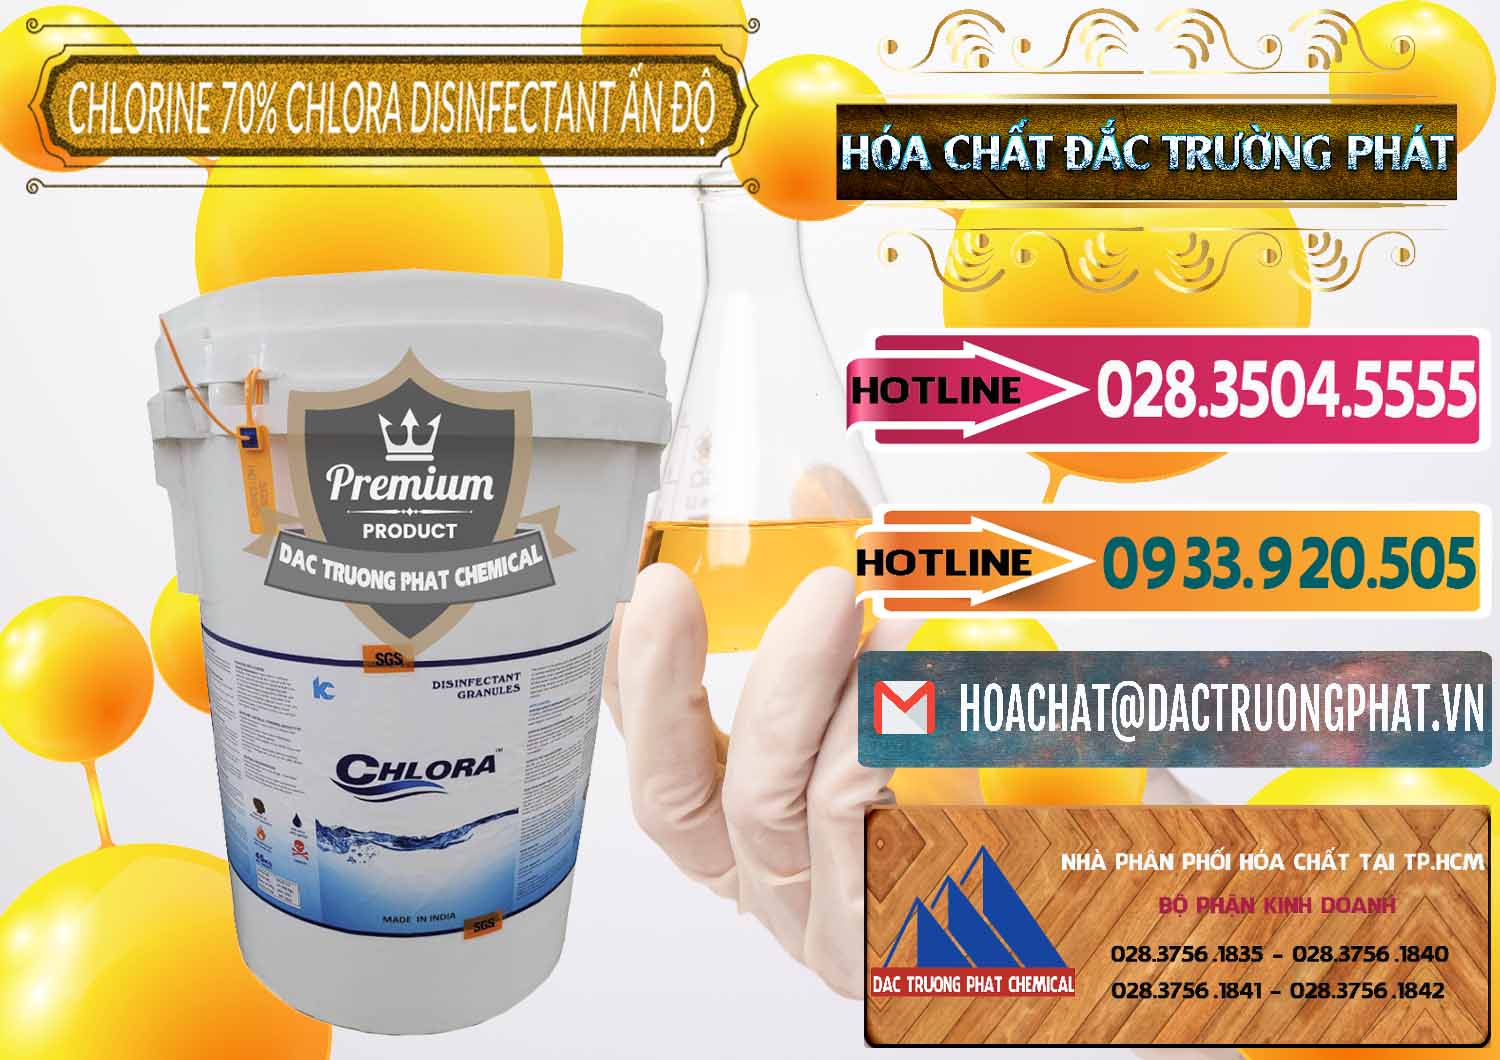 Nơi bán & phân phối Chlorine – Clorin 70% Chlora Disinfectant Ấn Độ India - 0213 - Nhà phân phối - cung ứng hóa chất tại TP.HCM - dactruongphat.vn